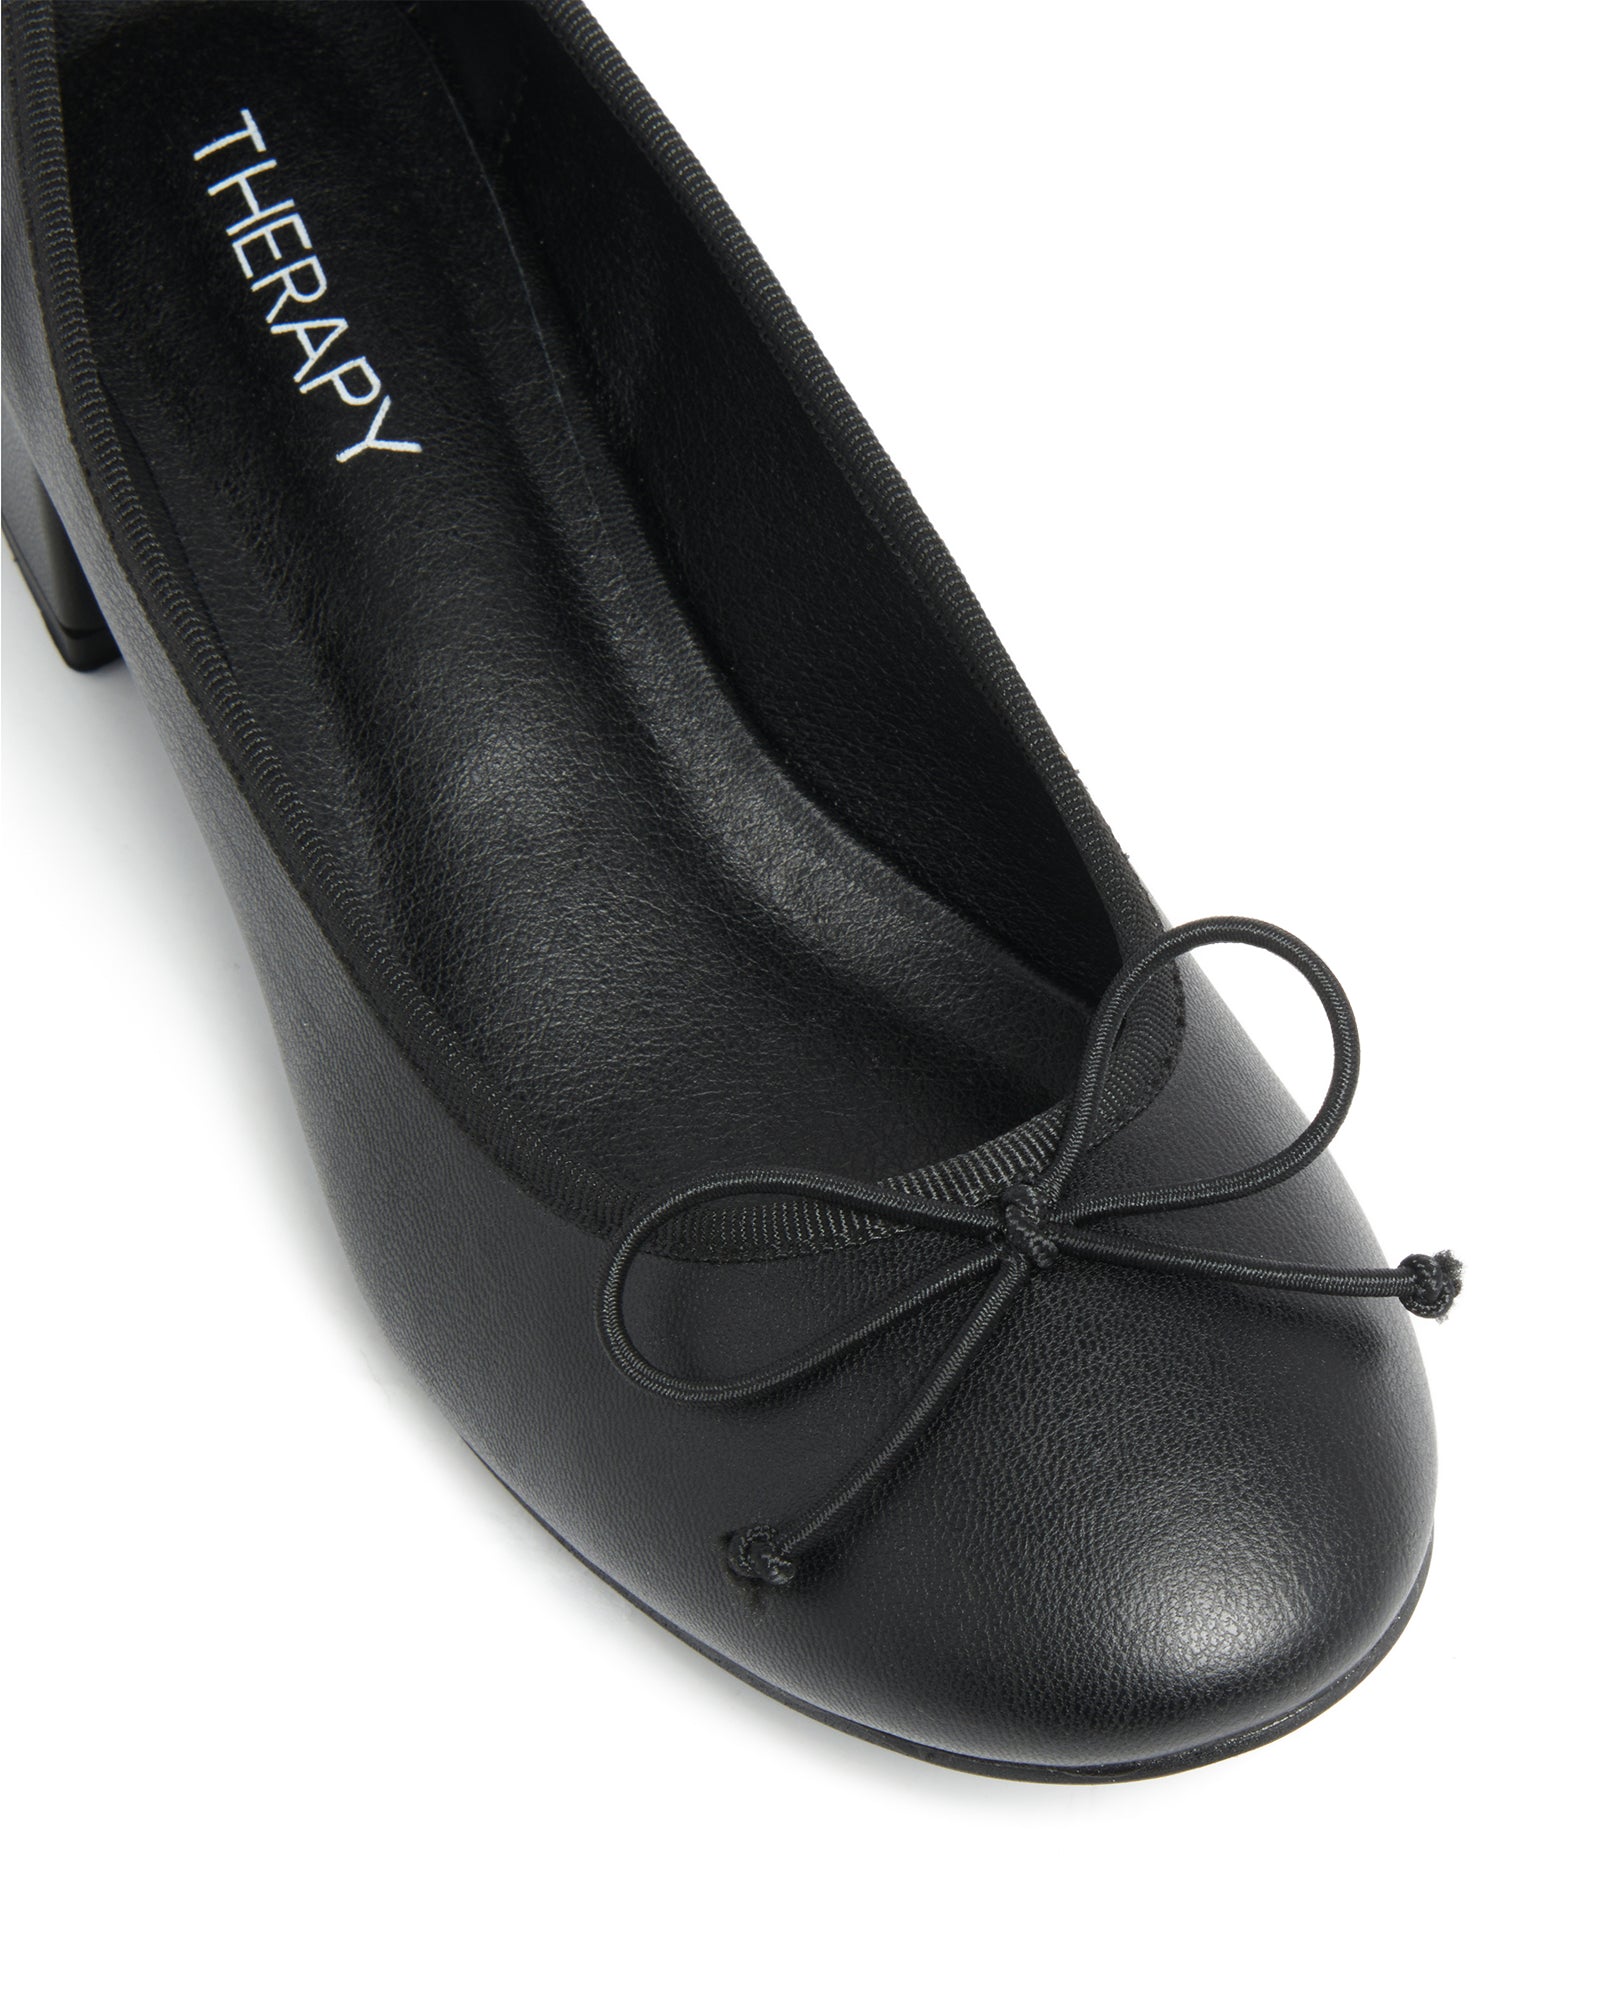 Therapy Shoes Diana Ballet Heel Black | Women's Ballet | Heels | Flats